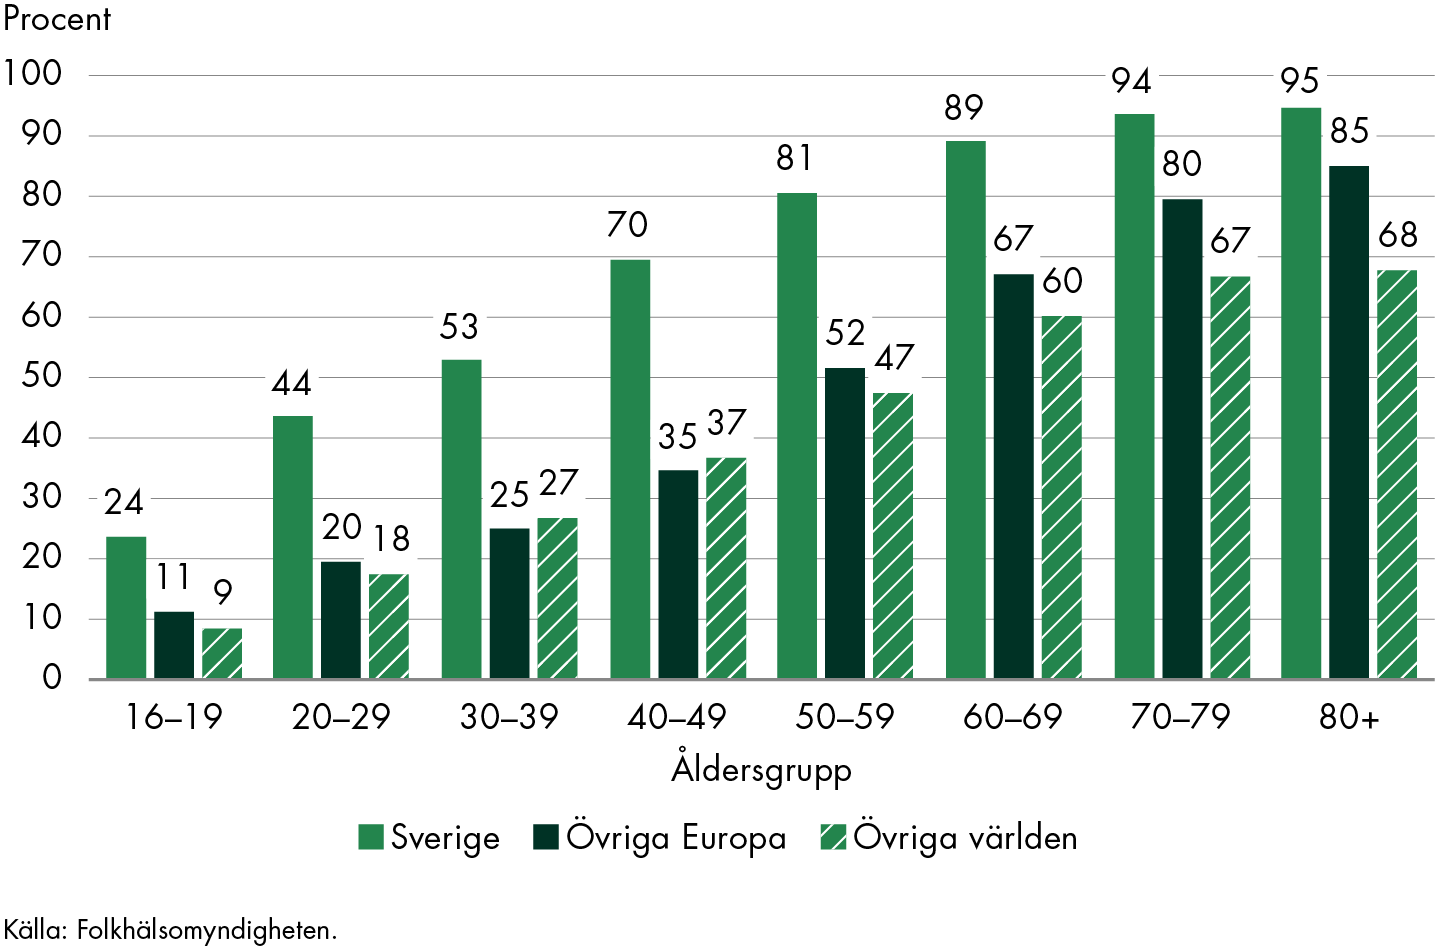 Födda i Sverige har högre vaccinationstäckning än födda i övriga Europa och övriga världen oavsett vilka åldersgrupper som jämförs. Oberoende av födelseland är vaccinationstäckningen högre i äldre åldersgrupper.